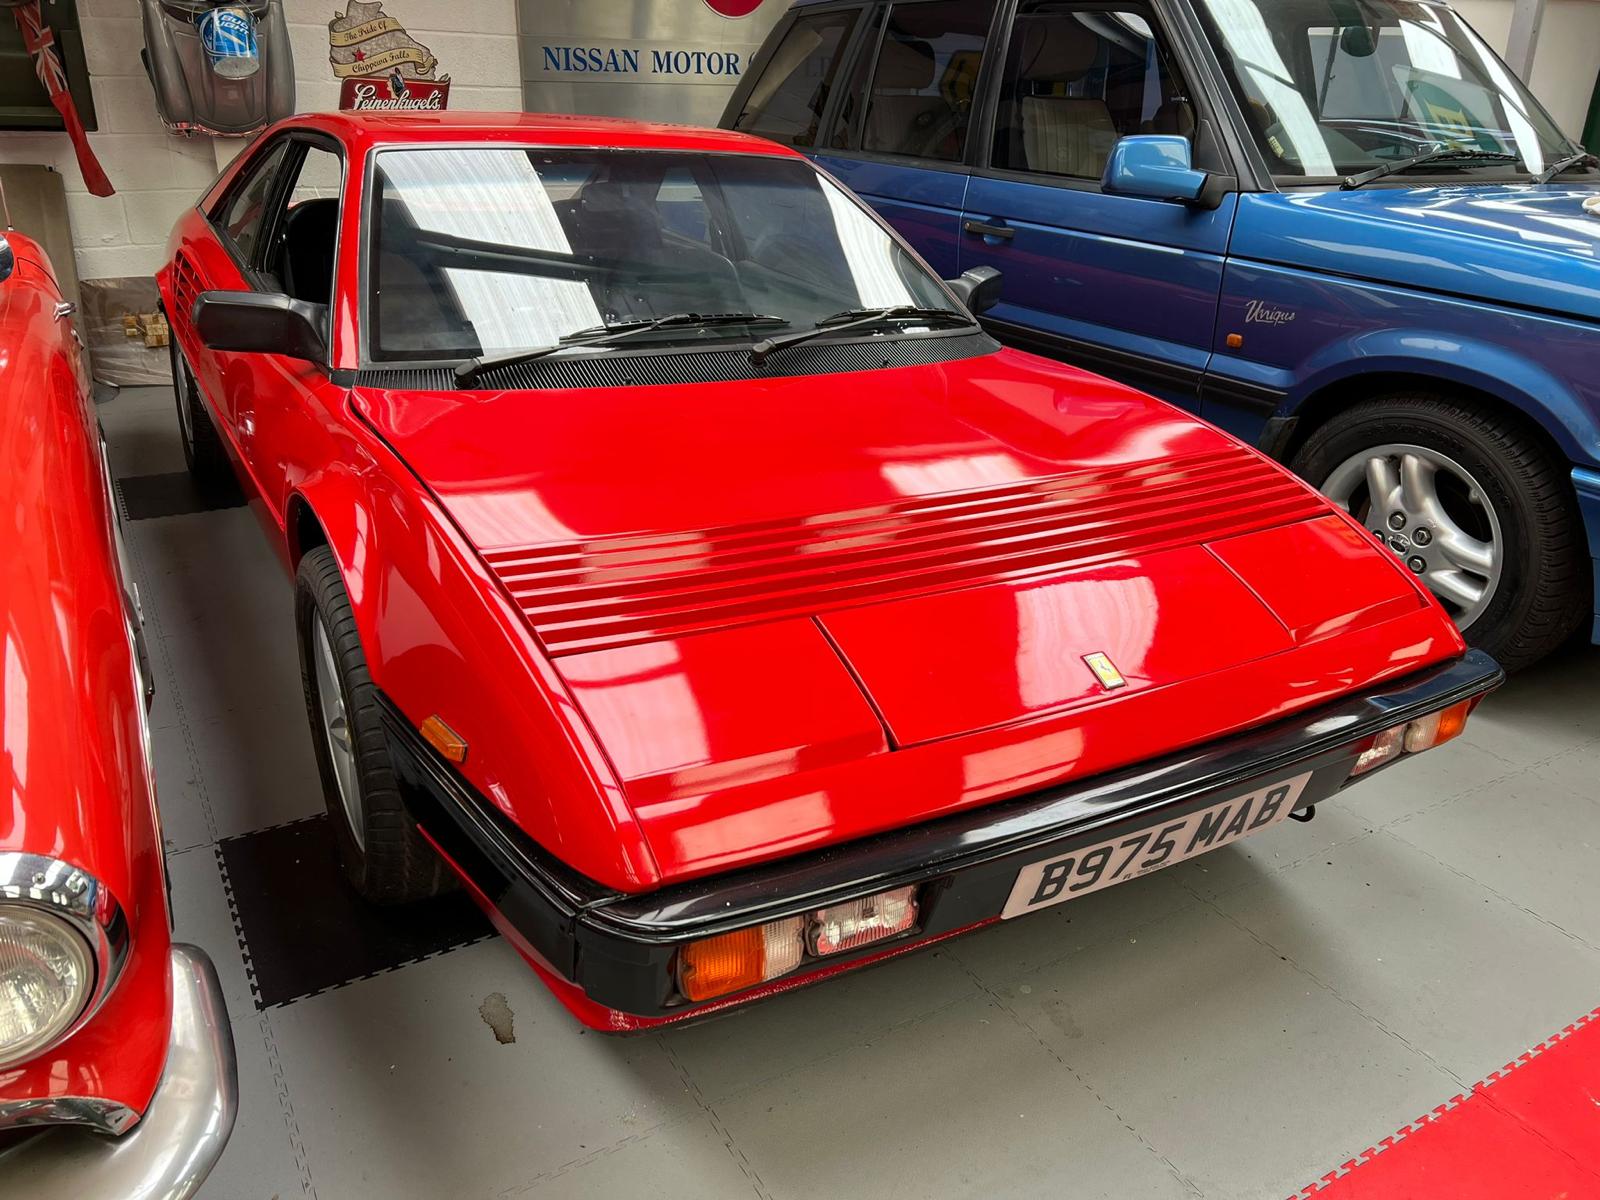 Ferrari Mondial Quattrovalvole Coupe 1984 - Image 3 of 22